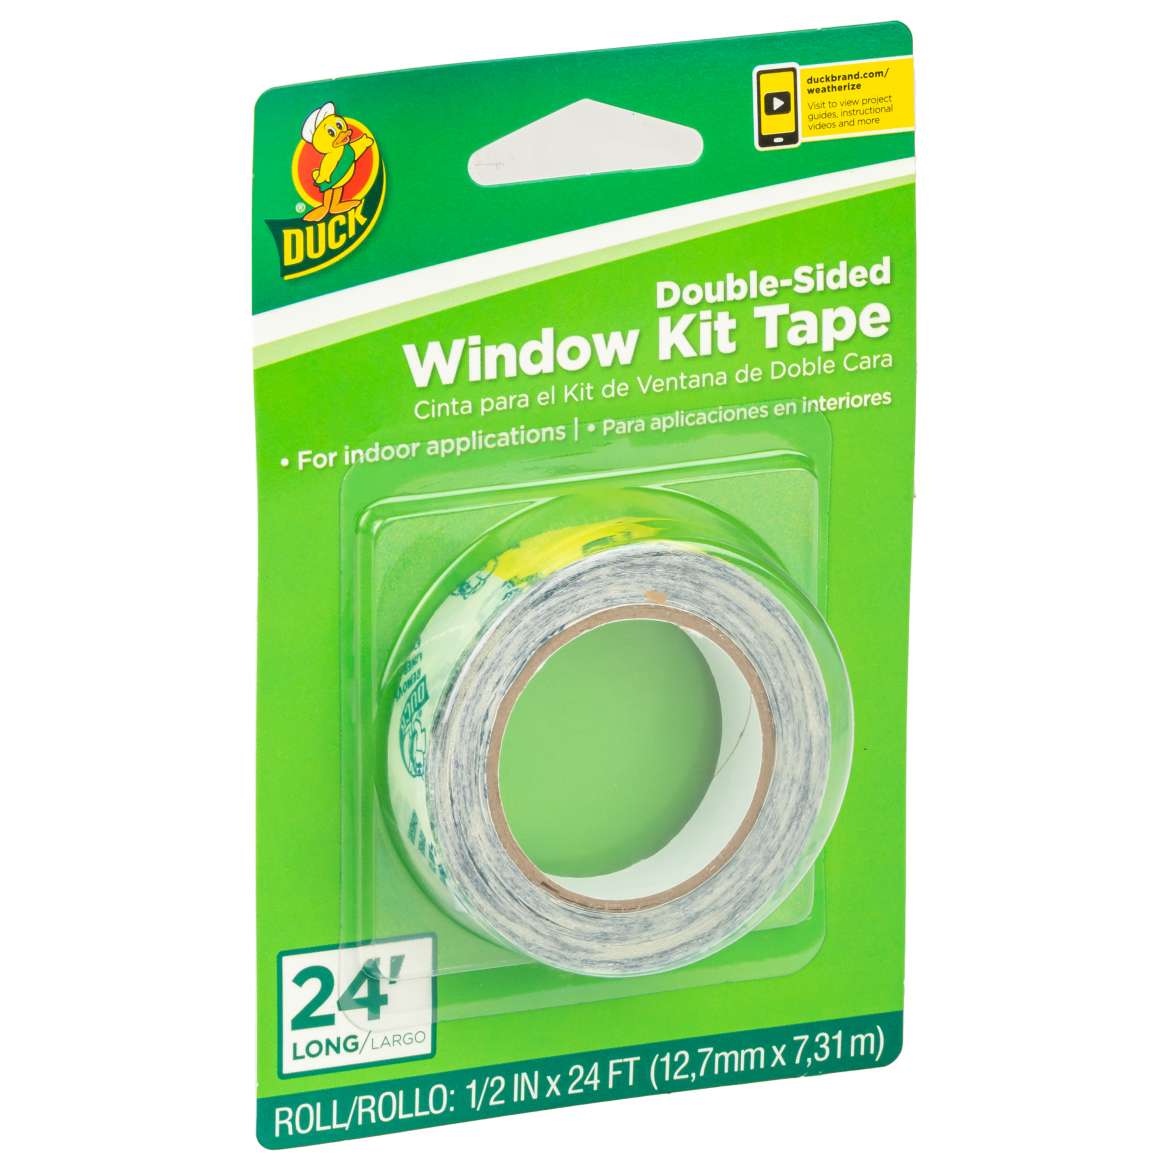 Double-Sided Window Kit Tape